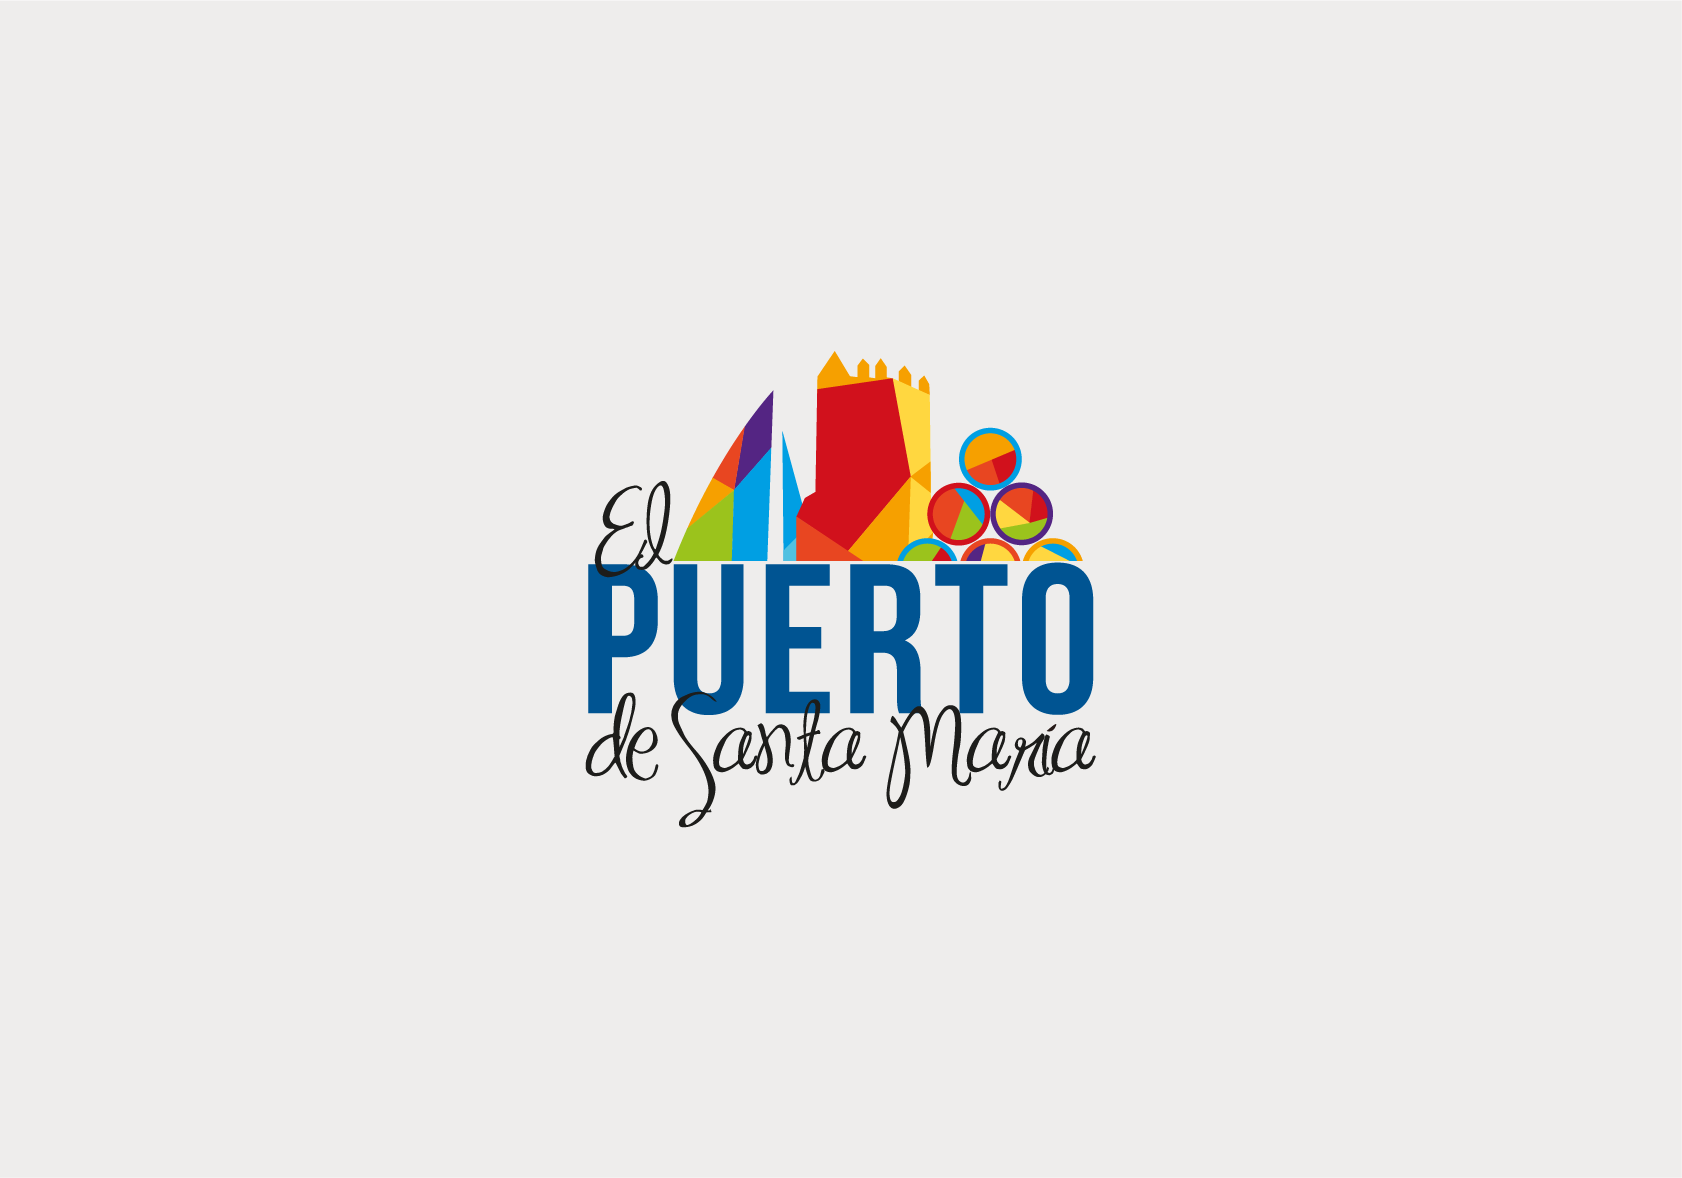 Diseño del actual logotipo de Turismo El Puerto. Creación de la identidad corporativa y sus aplicaciones en distintos formatos. Desarrollo y gestión de campañas en redes sociales. 